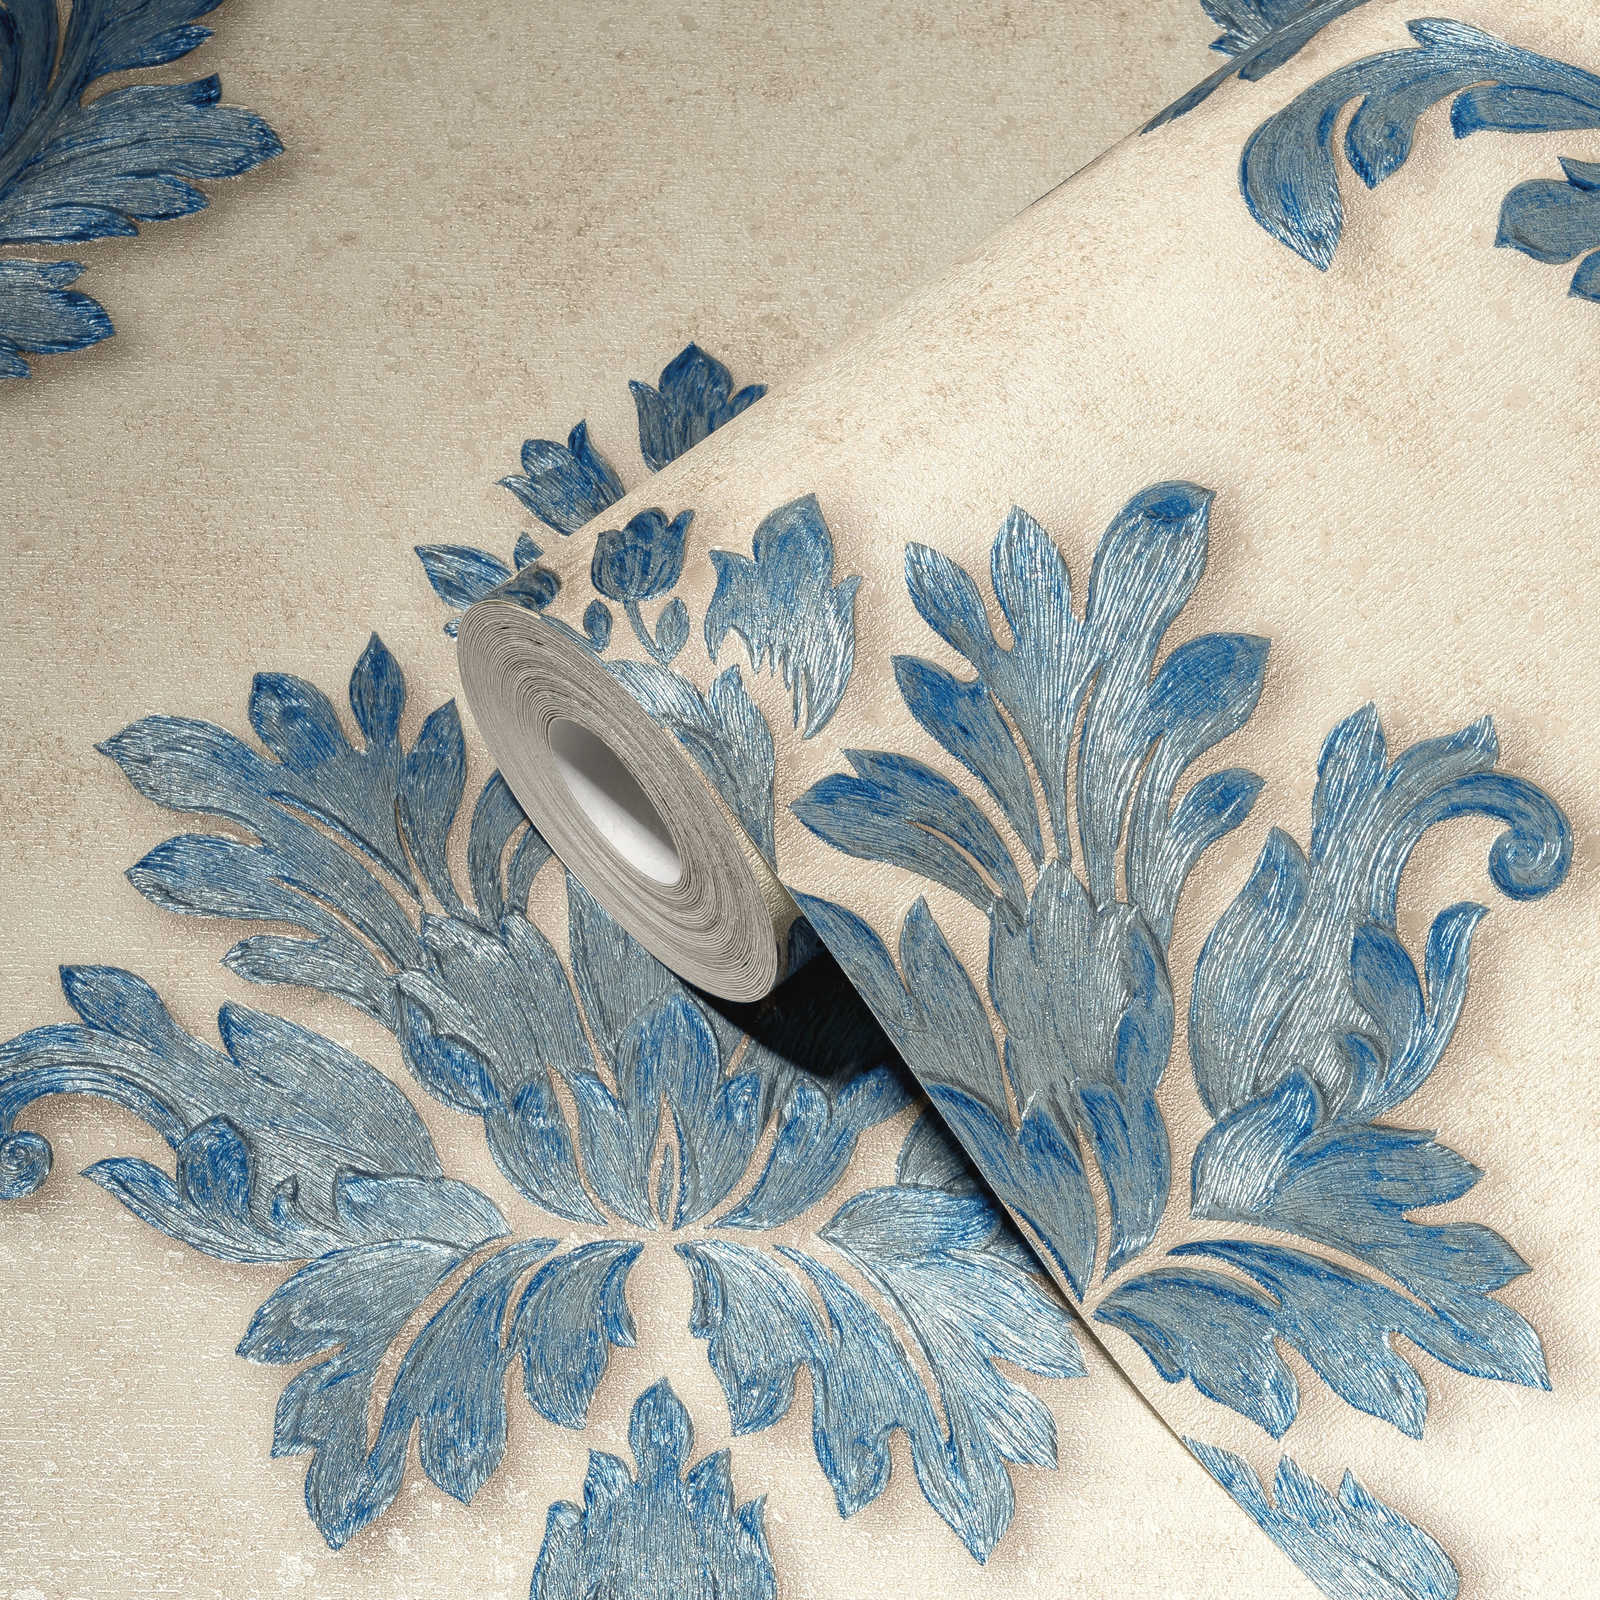             Papel pintado de diseño con adornos florales y efecto metálico - azul, oro, crema
        